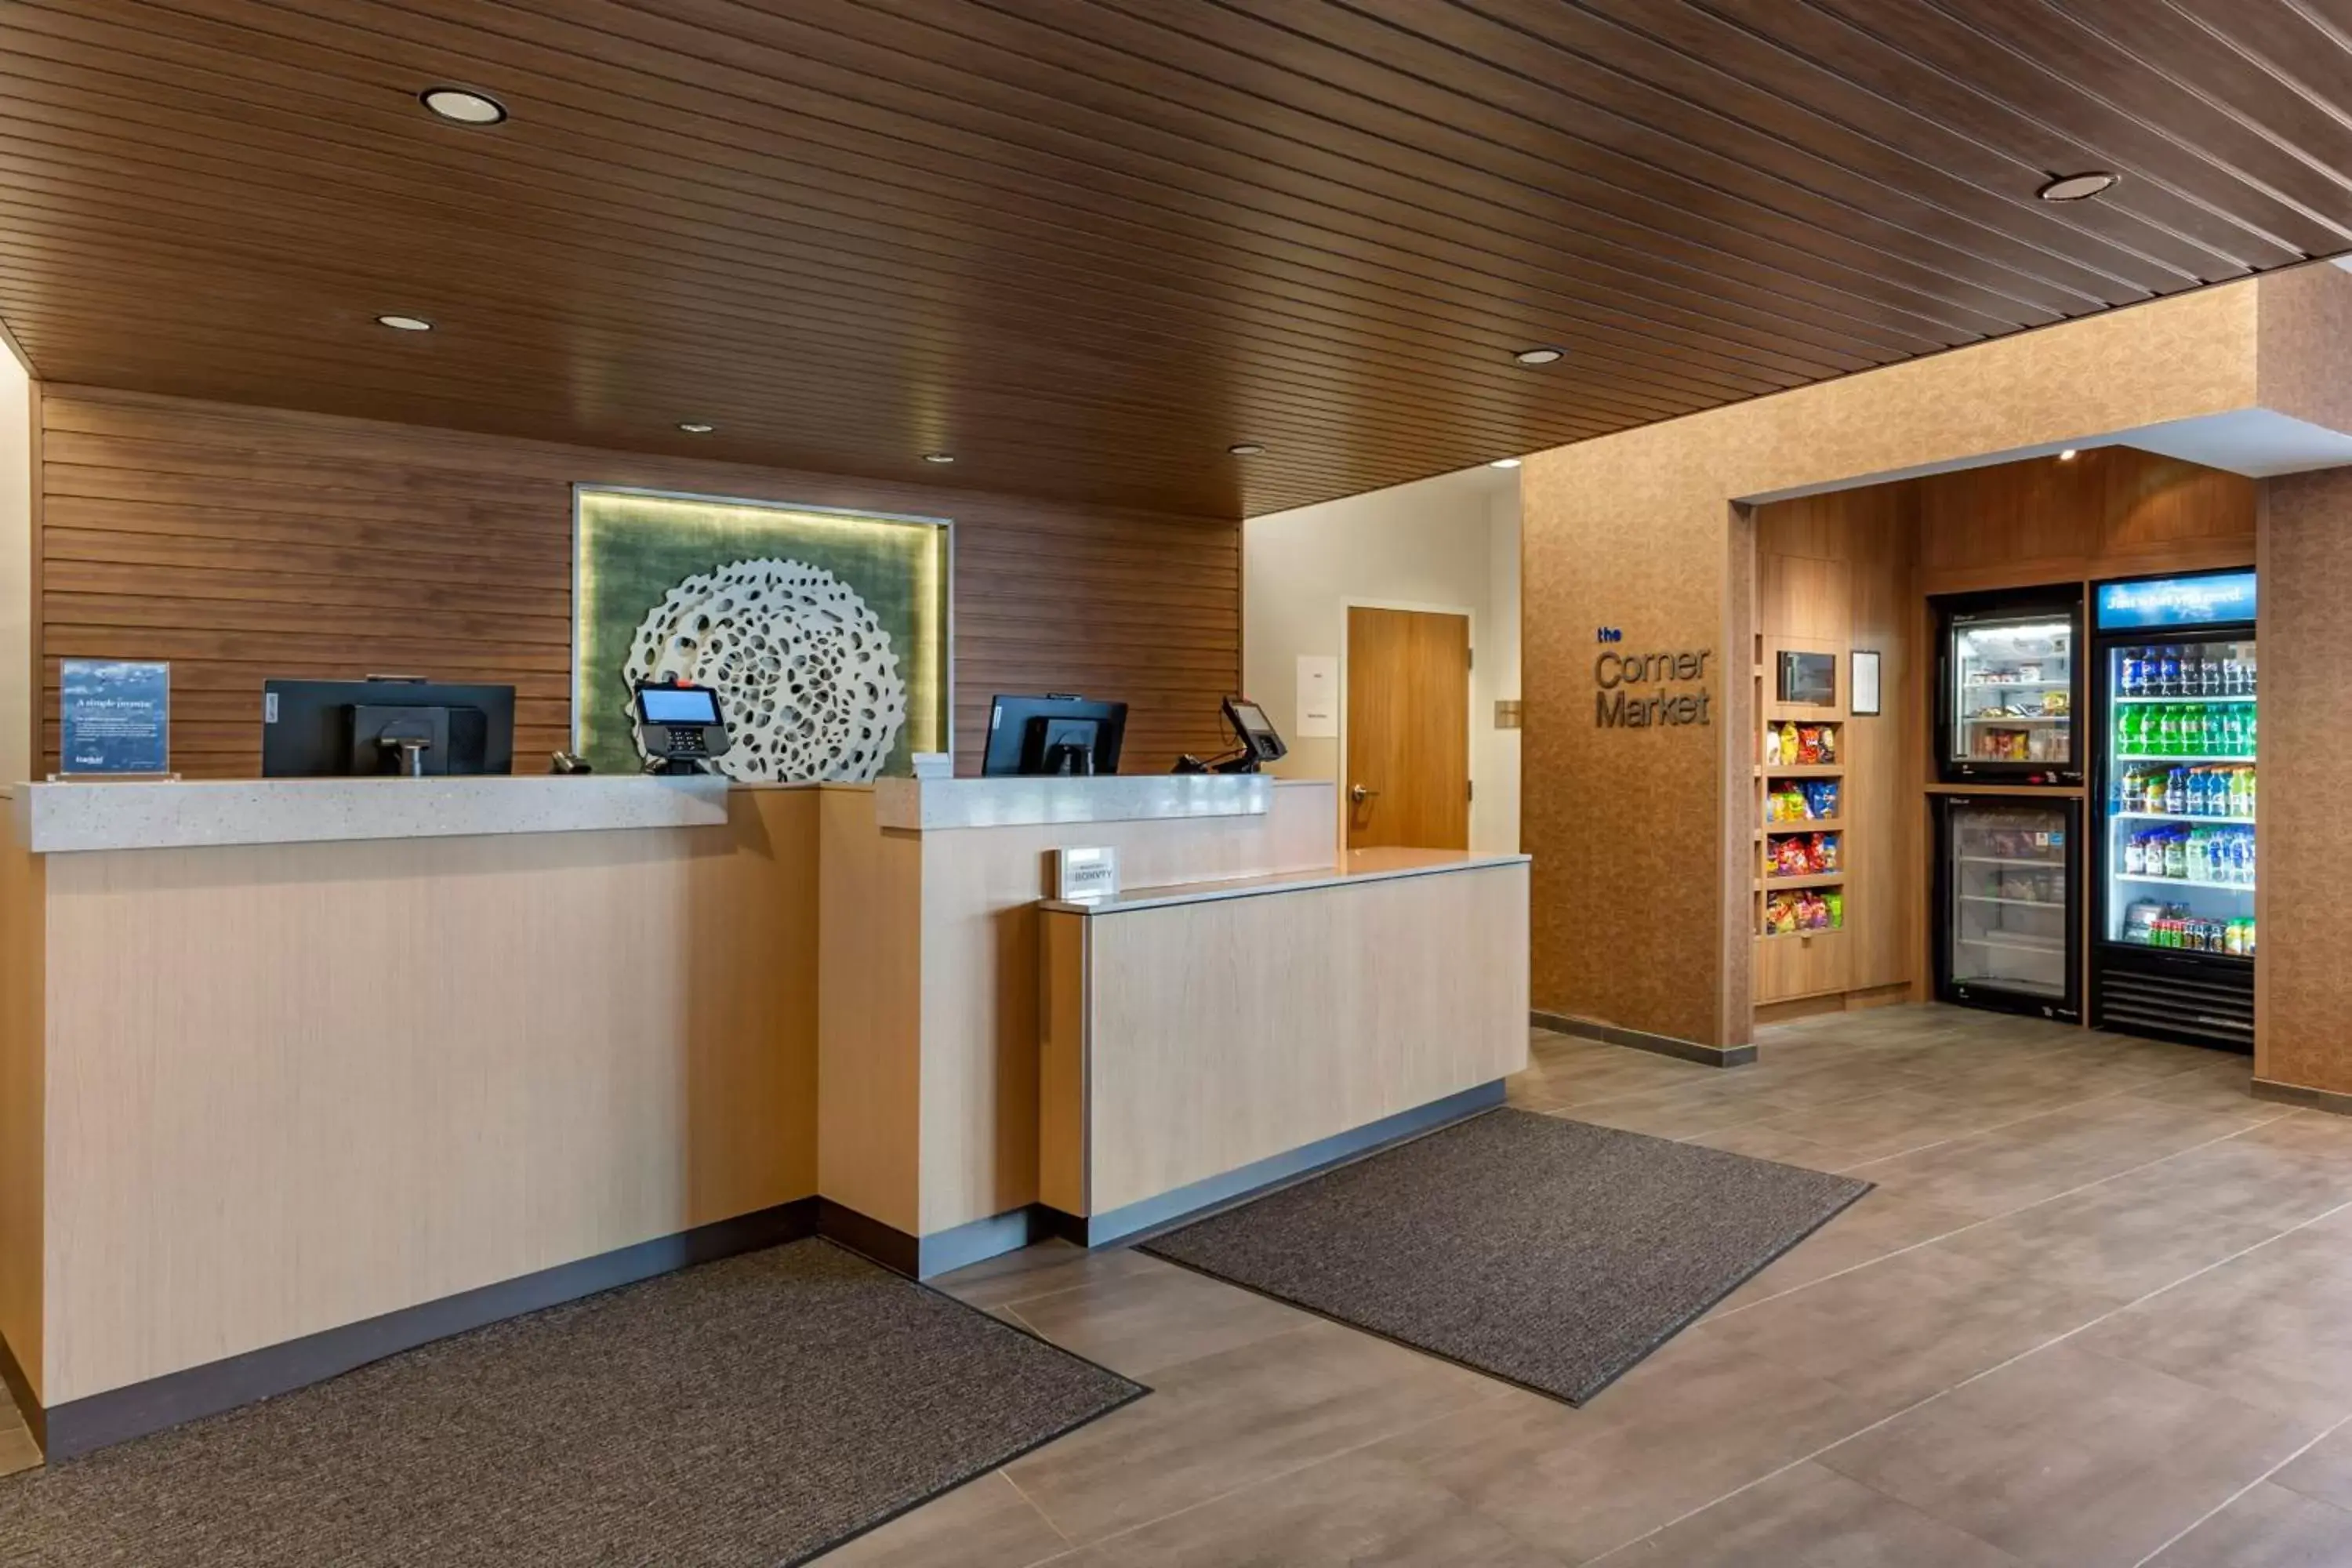 Lobby or reception, Lobby/Reception in Fairfield by Marriott Inn & Suites Sandusky